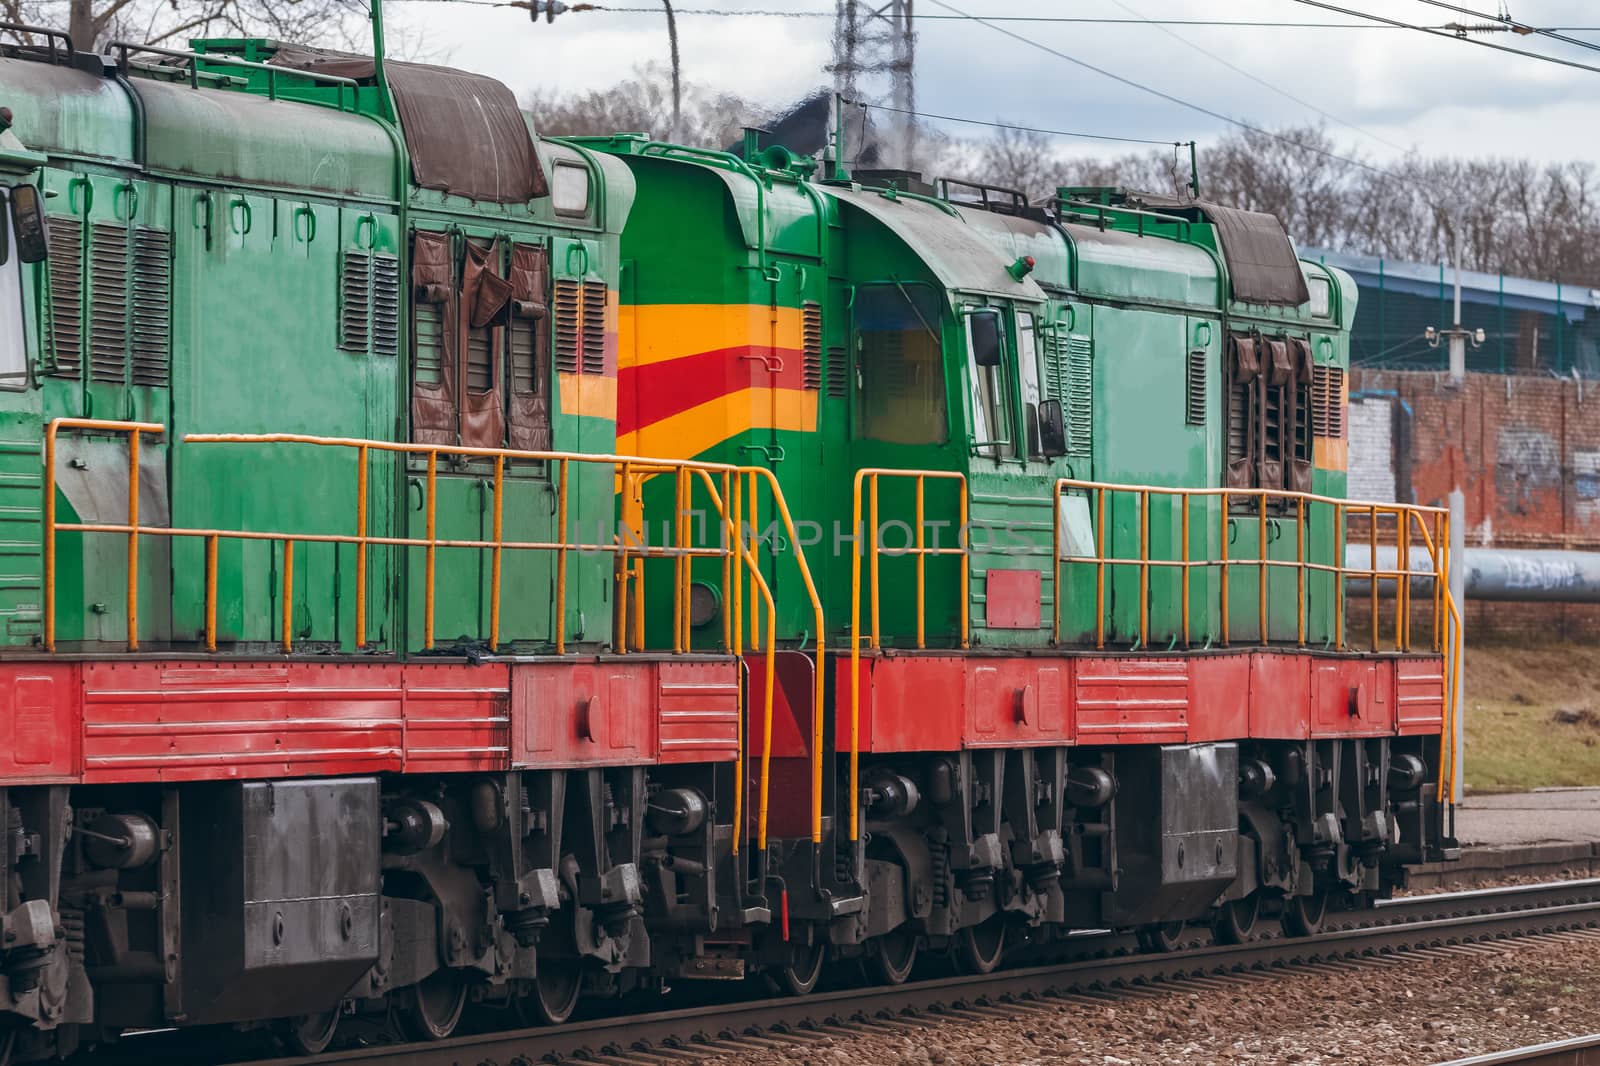 Green diesel locomotive by sengnsp